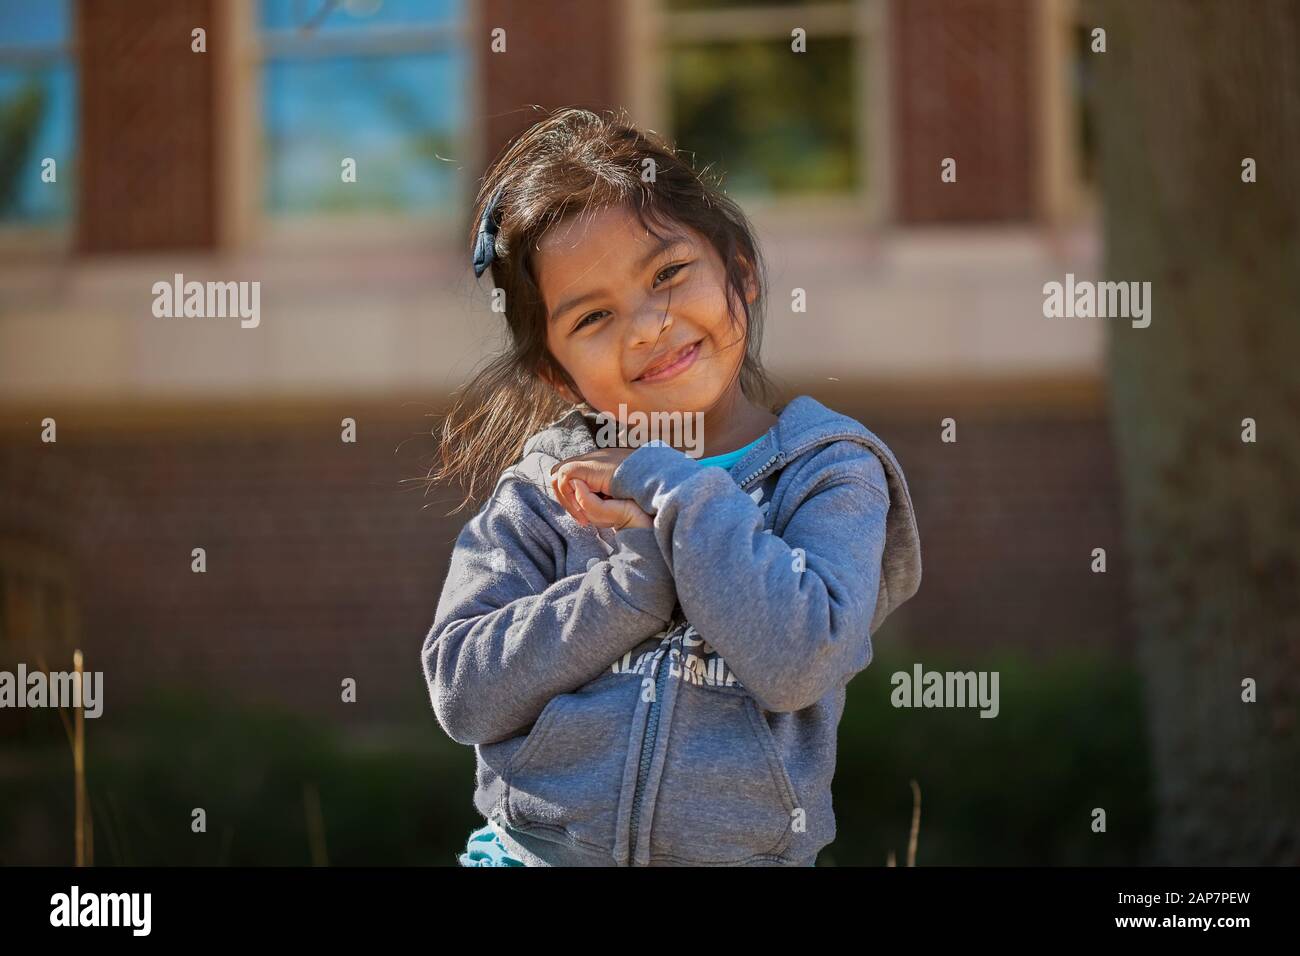 Süßes kleines Mädchen, das ihre Hände zusammenhält, die Liebe, Glück oder Gratis-Begabung zum Ausdruck bringt, mit einem Schulgebäude aus Backsteinen im Hintergrund. Stockfoto